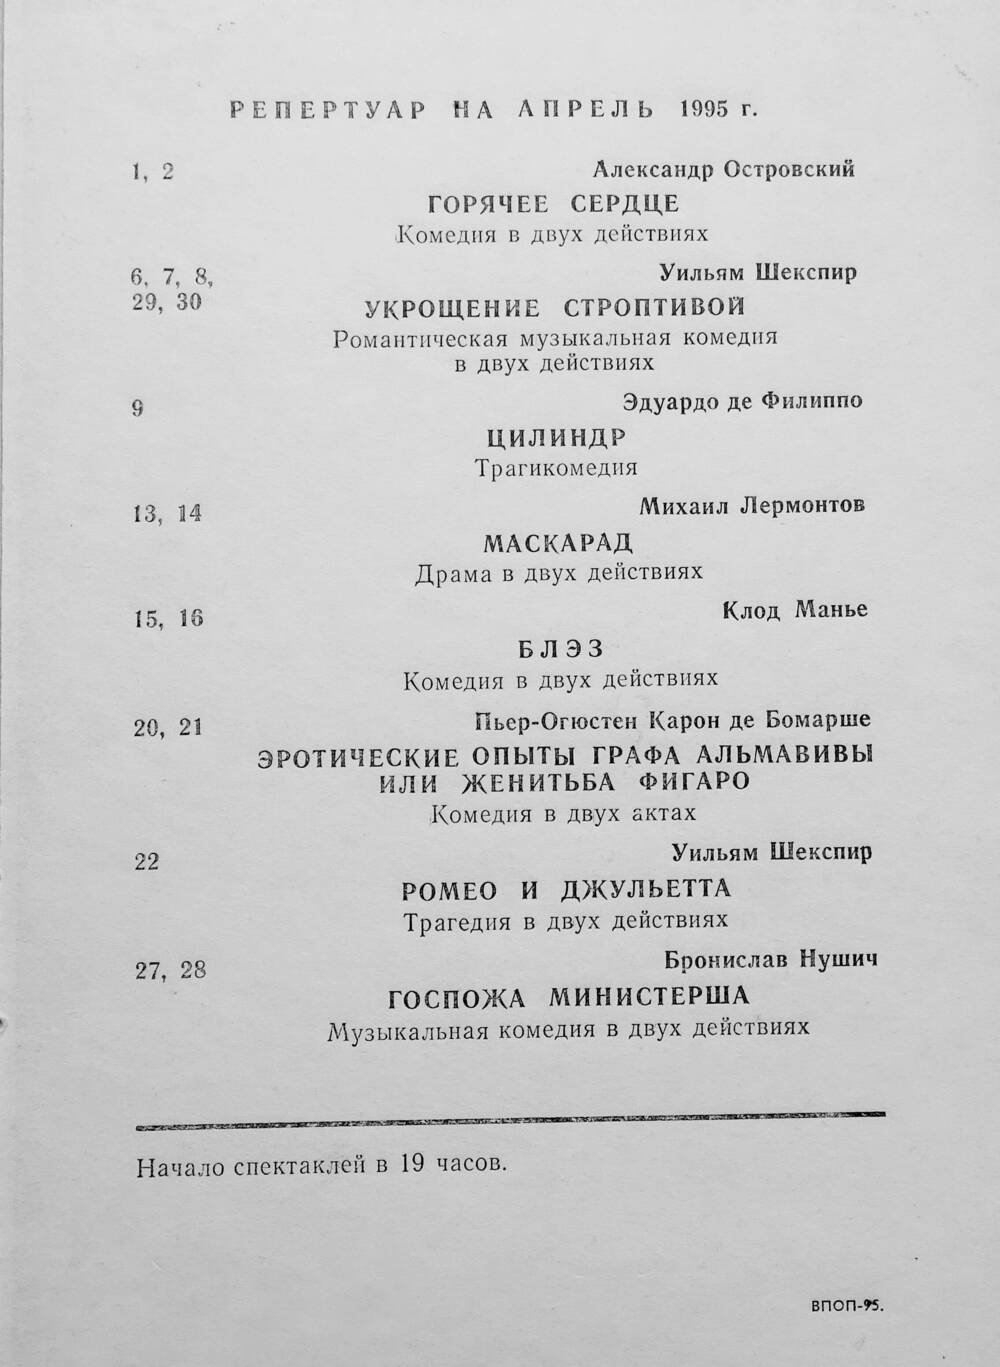 Листок репертуарный Волгоградского НЭТ на апрель 1995 г.